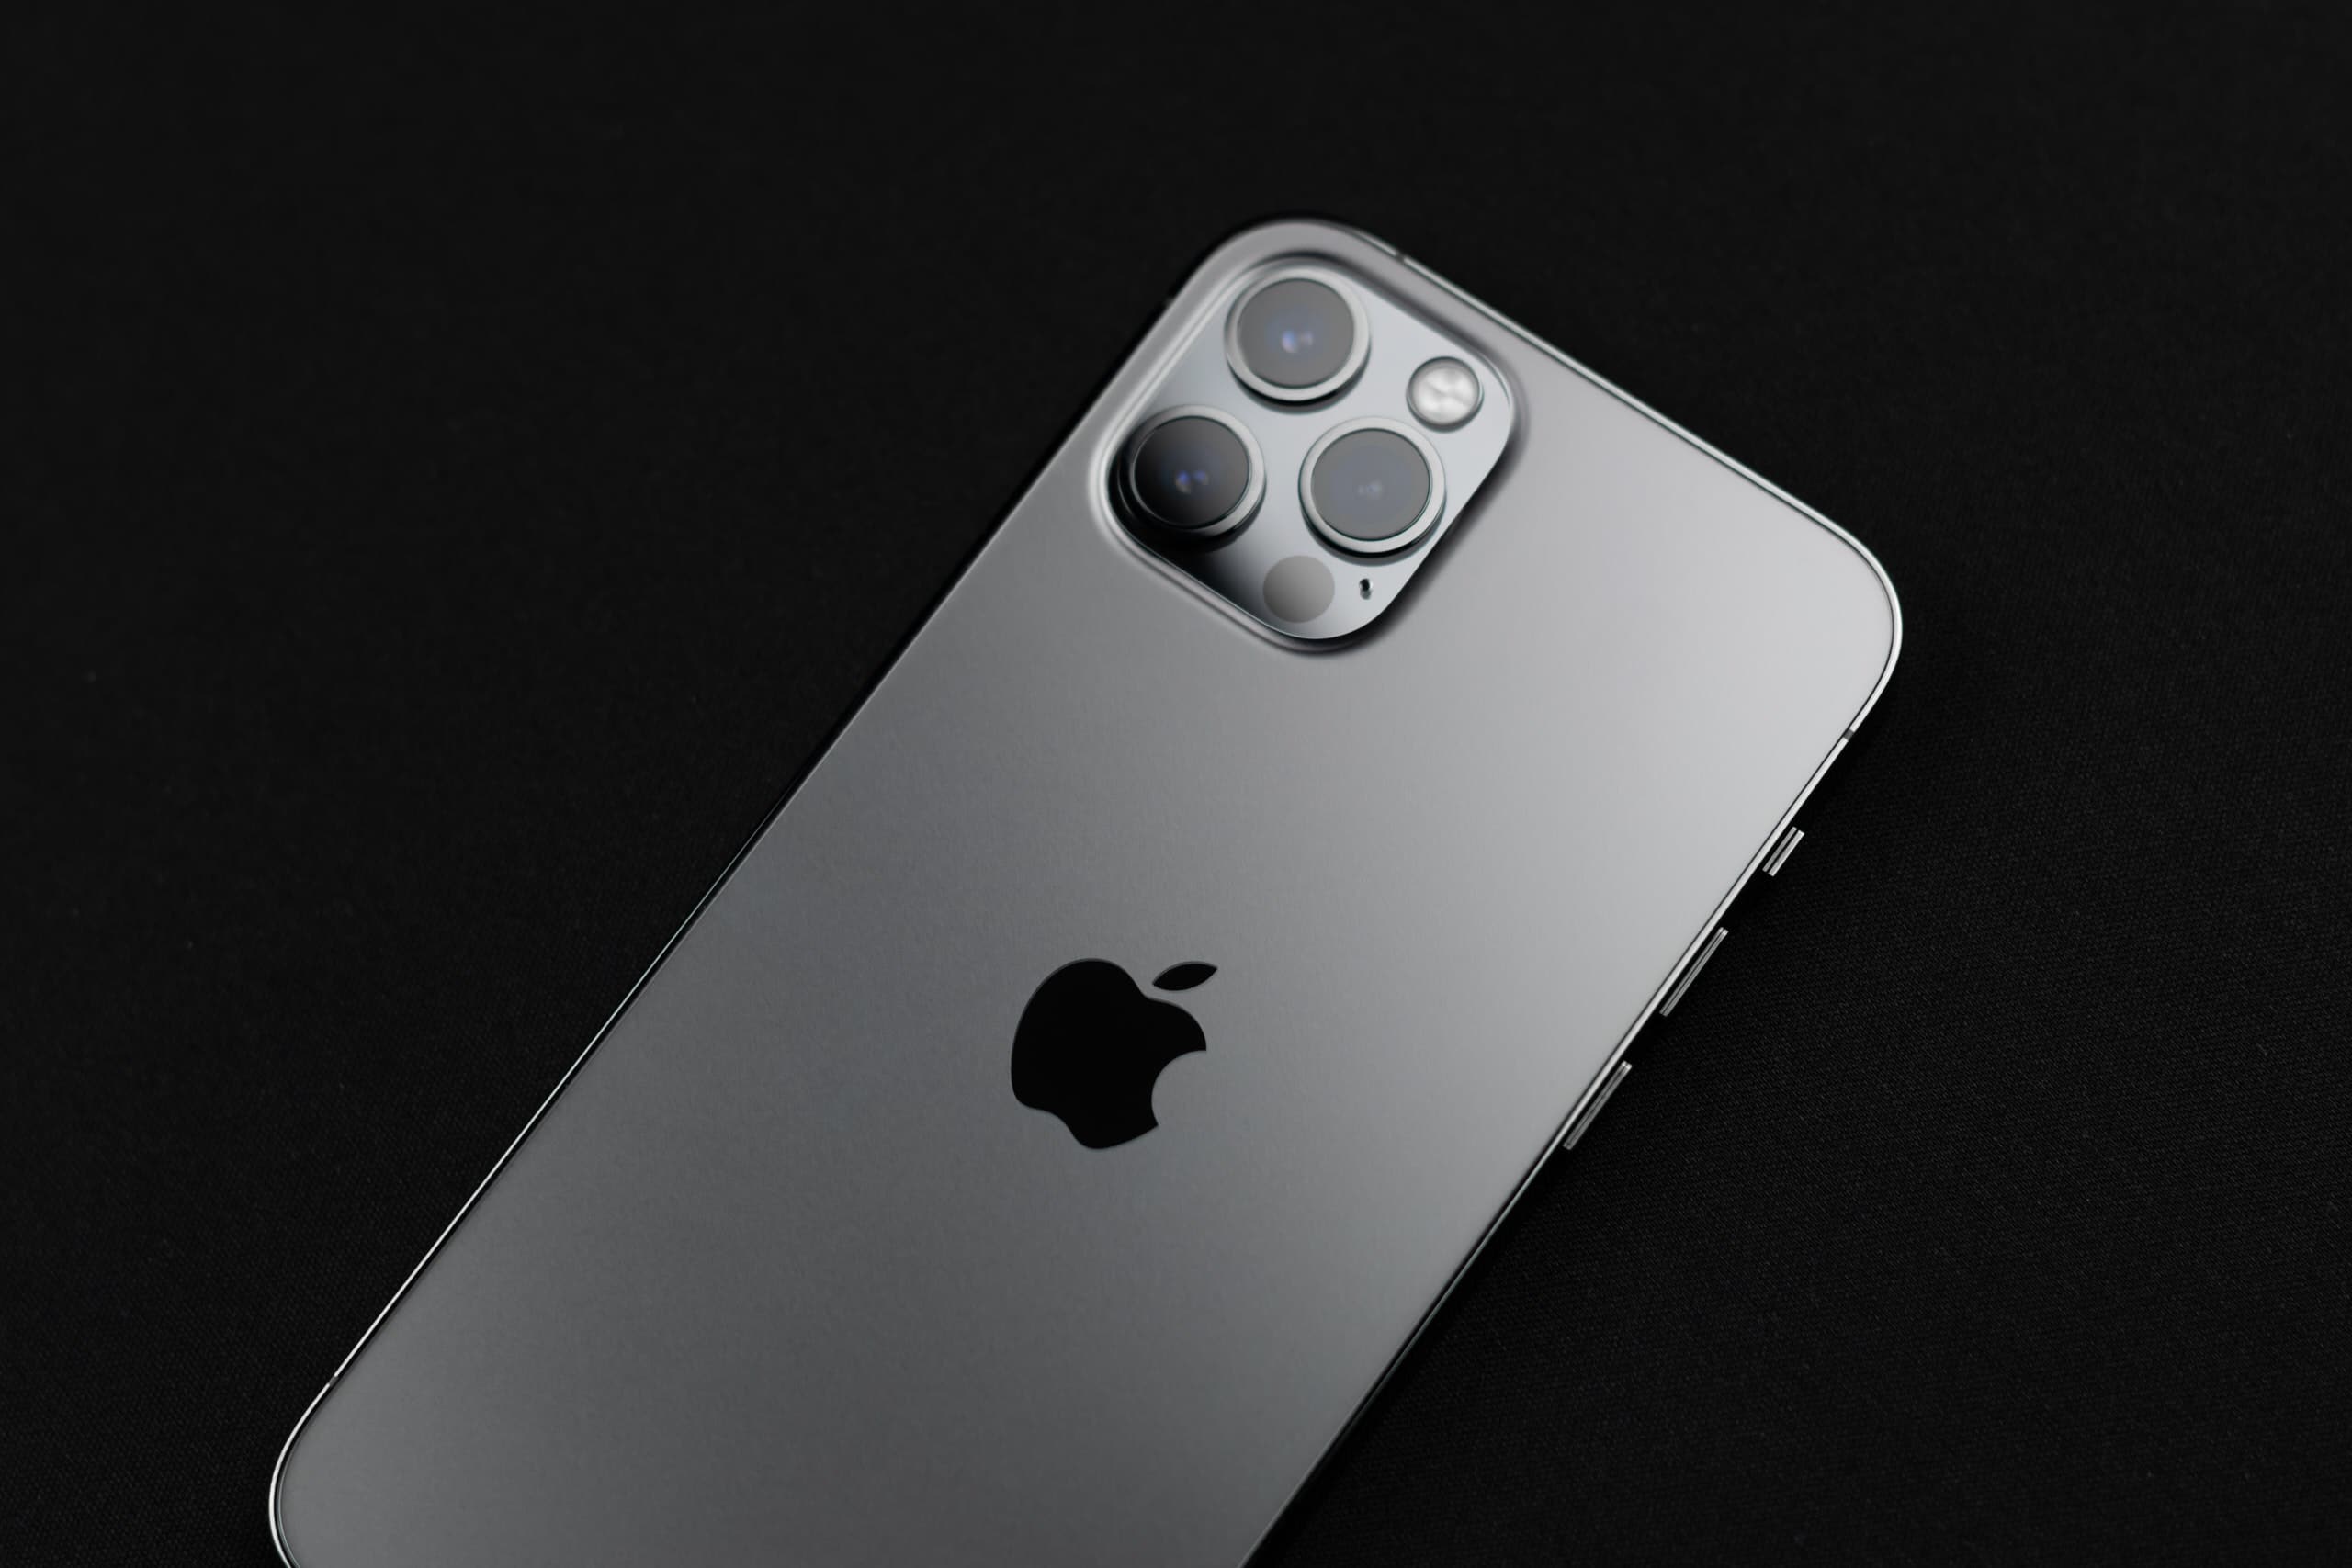 iPhone 13 sẽ có bốn mẫu giống iPhone 12, phiên bản Pro sẽ nâng cấp camera góc siêu rộng